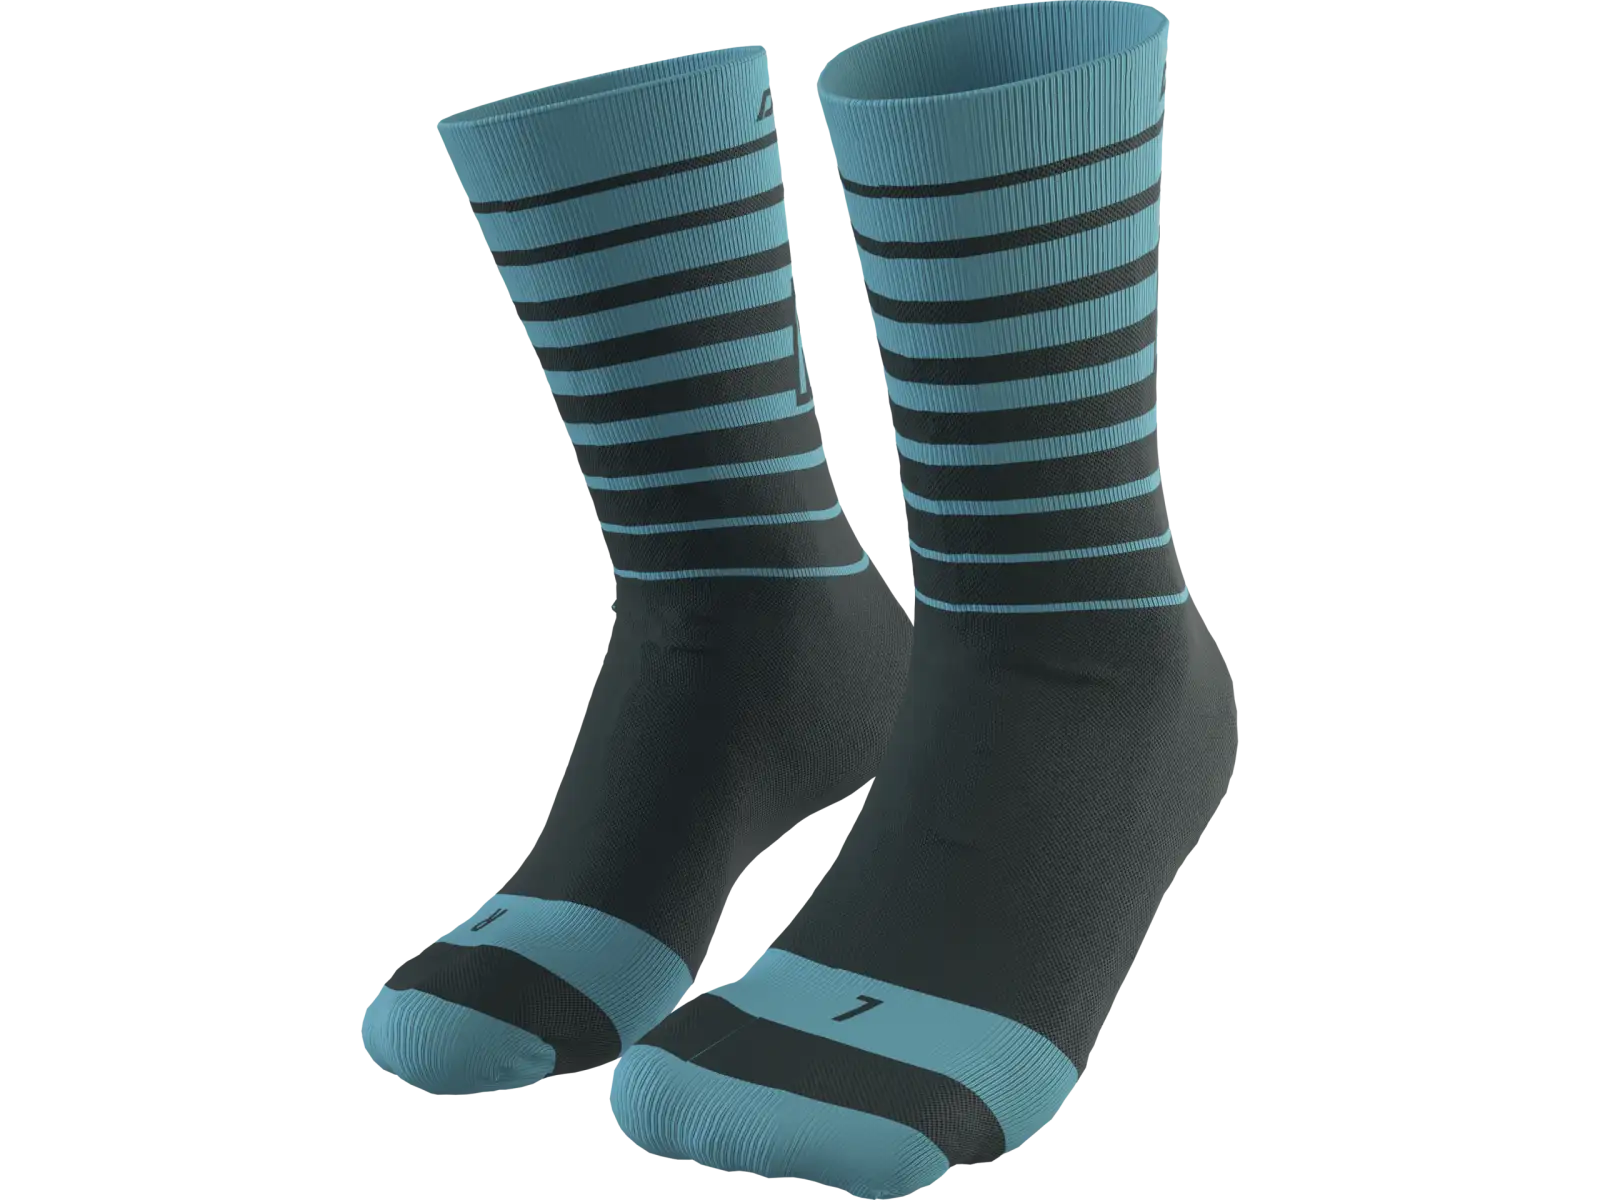 Športové ponožky Dynafit Live To Ride Storm Blue